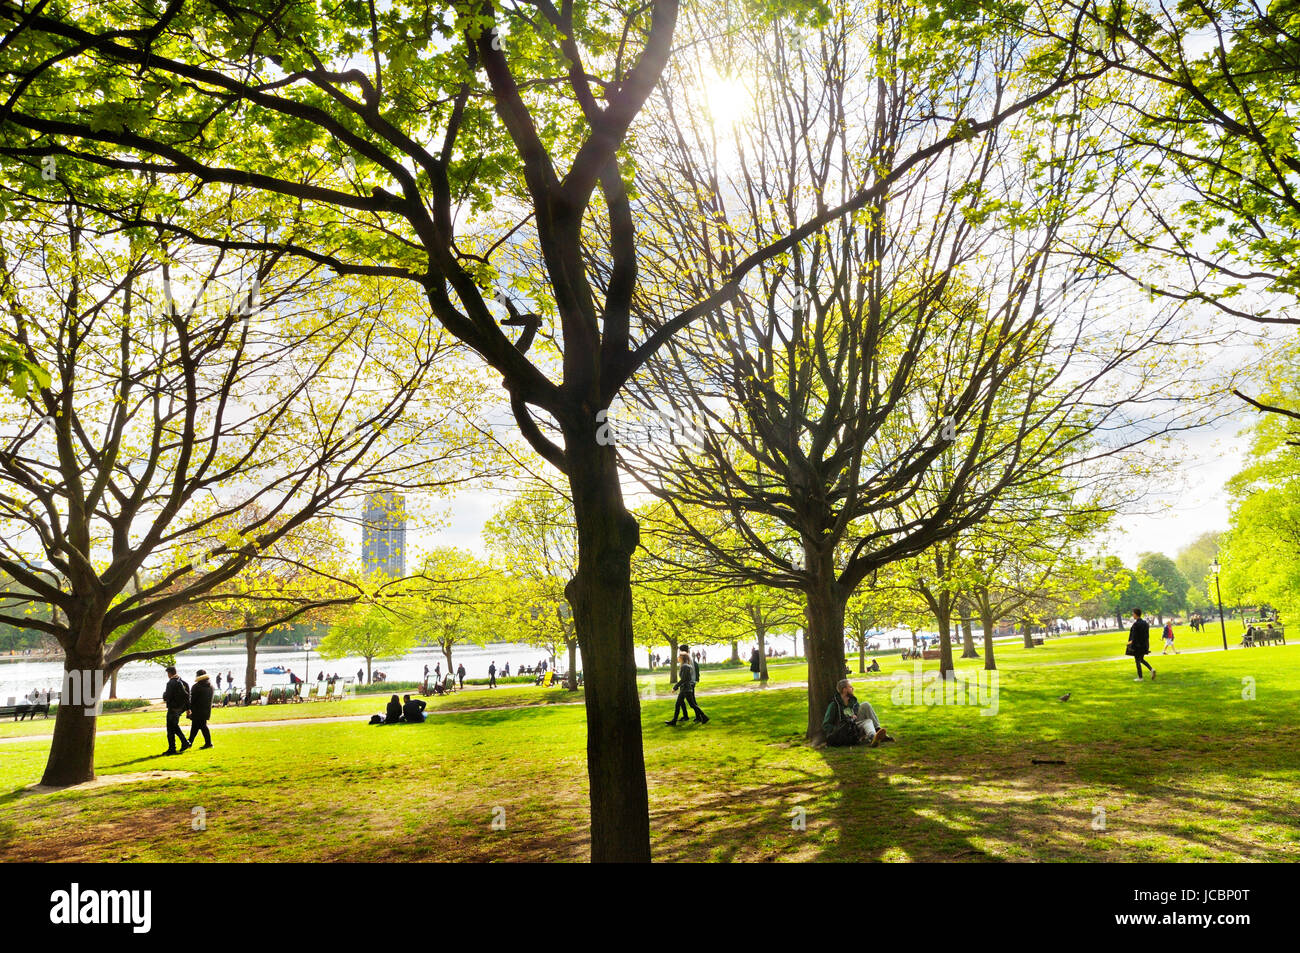 Hyde Park, Londres. Une promenade sous les arbres elevant vers sun dans Hyde Park en direction de la fameuse rivière Serpentine. Banque D'Images